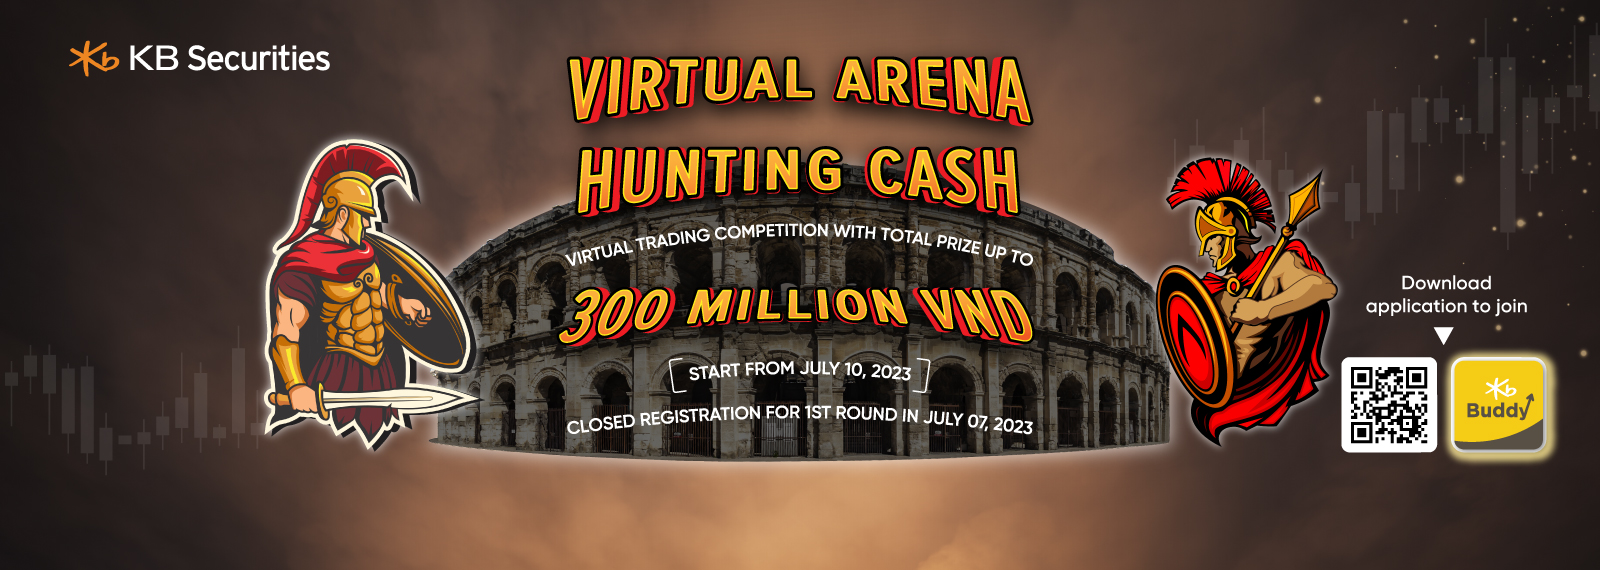 Virtual Arena - Hunting Cash